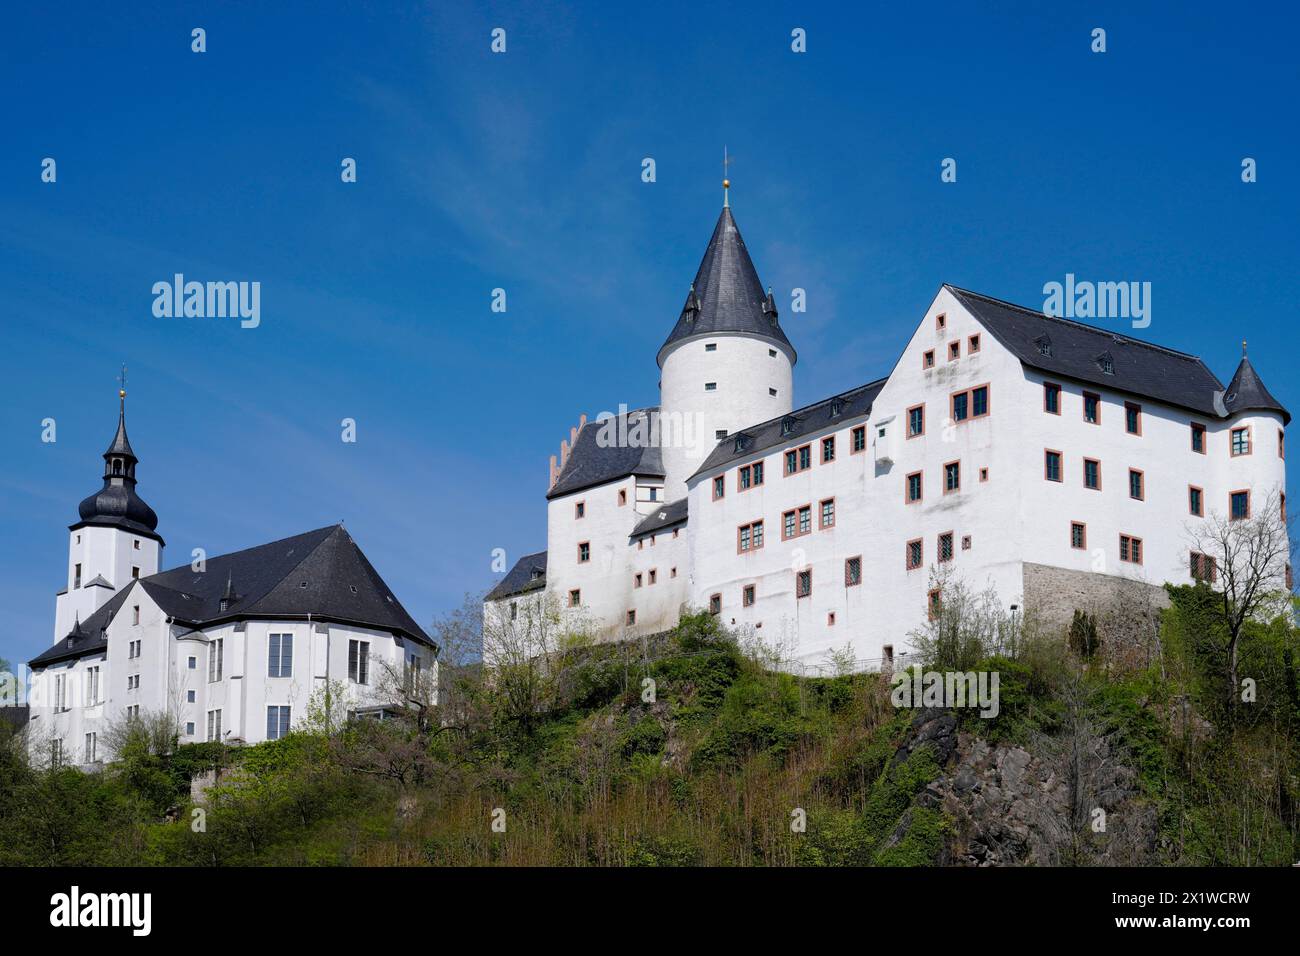 Burg, Schwarzenberg, Erzgebirgskreis, Saxony, Germany Stock Photo